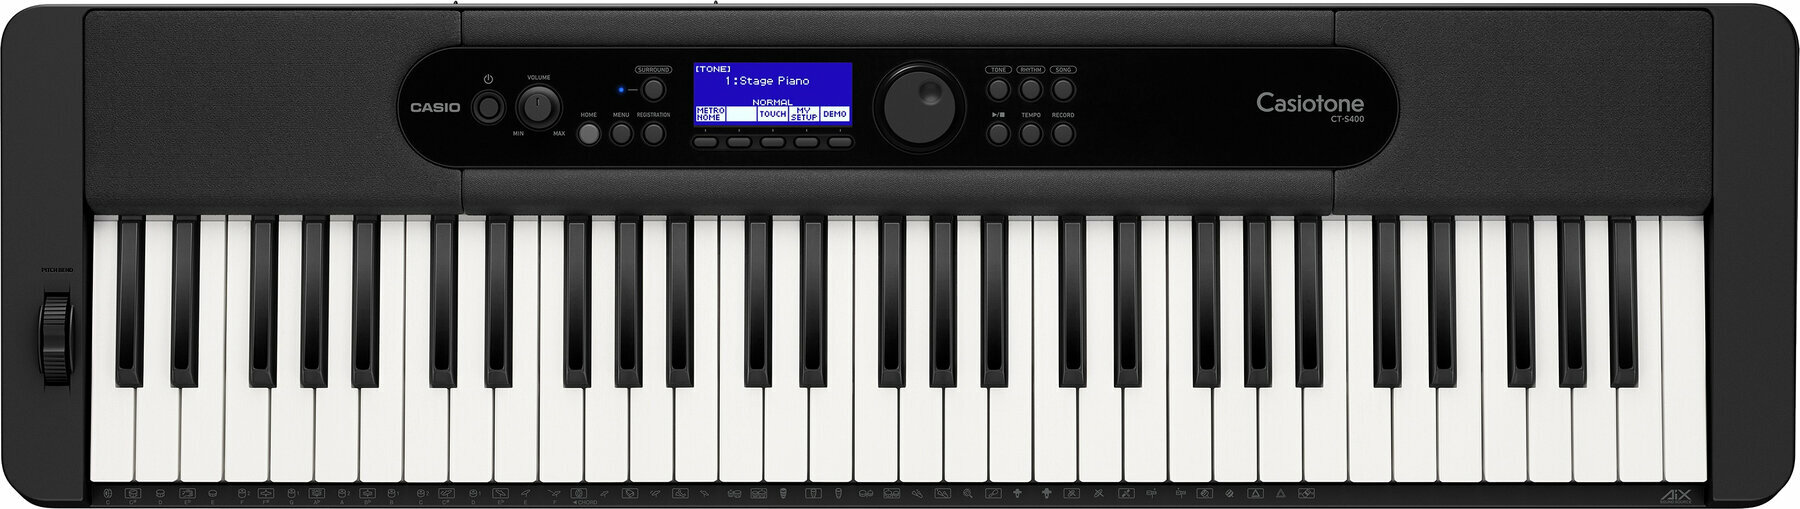 Keyboard mit Touch Response Casio CT-S400